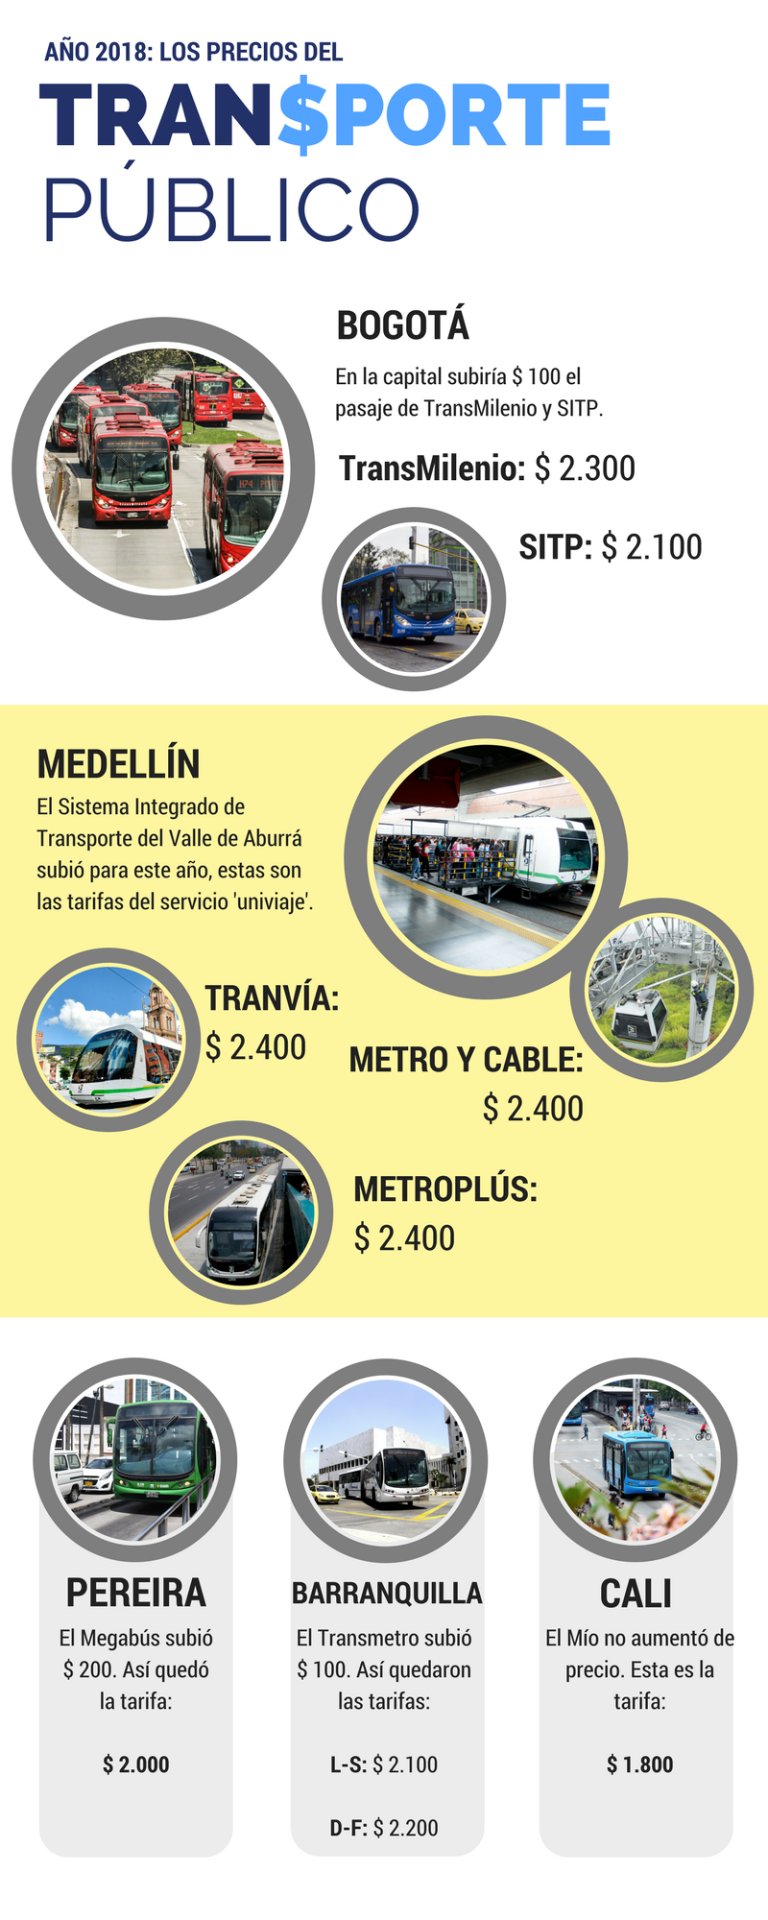 Tarifas de los sistemas de transporte público en Colombia en 2018.